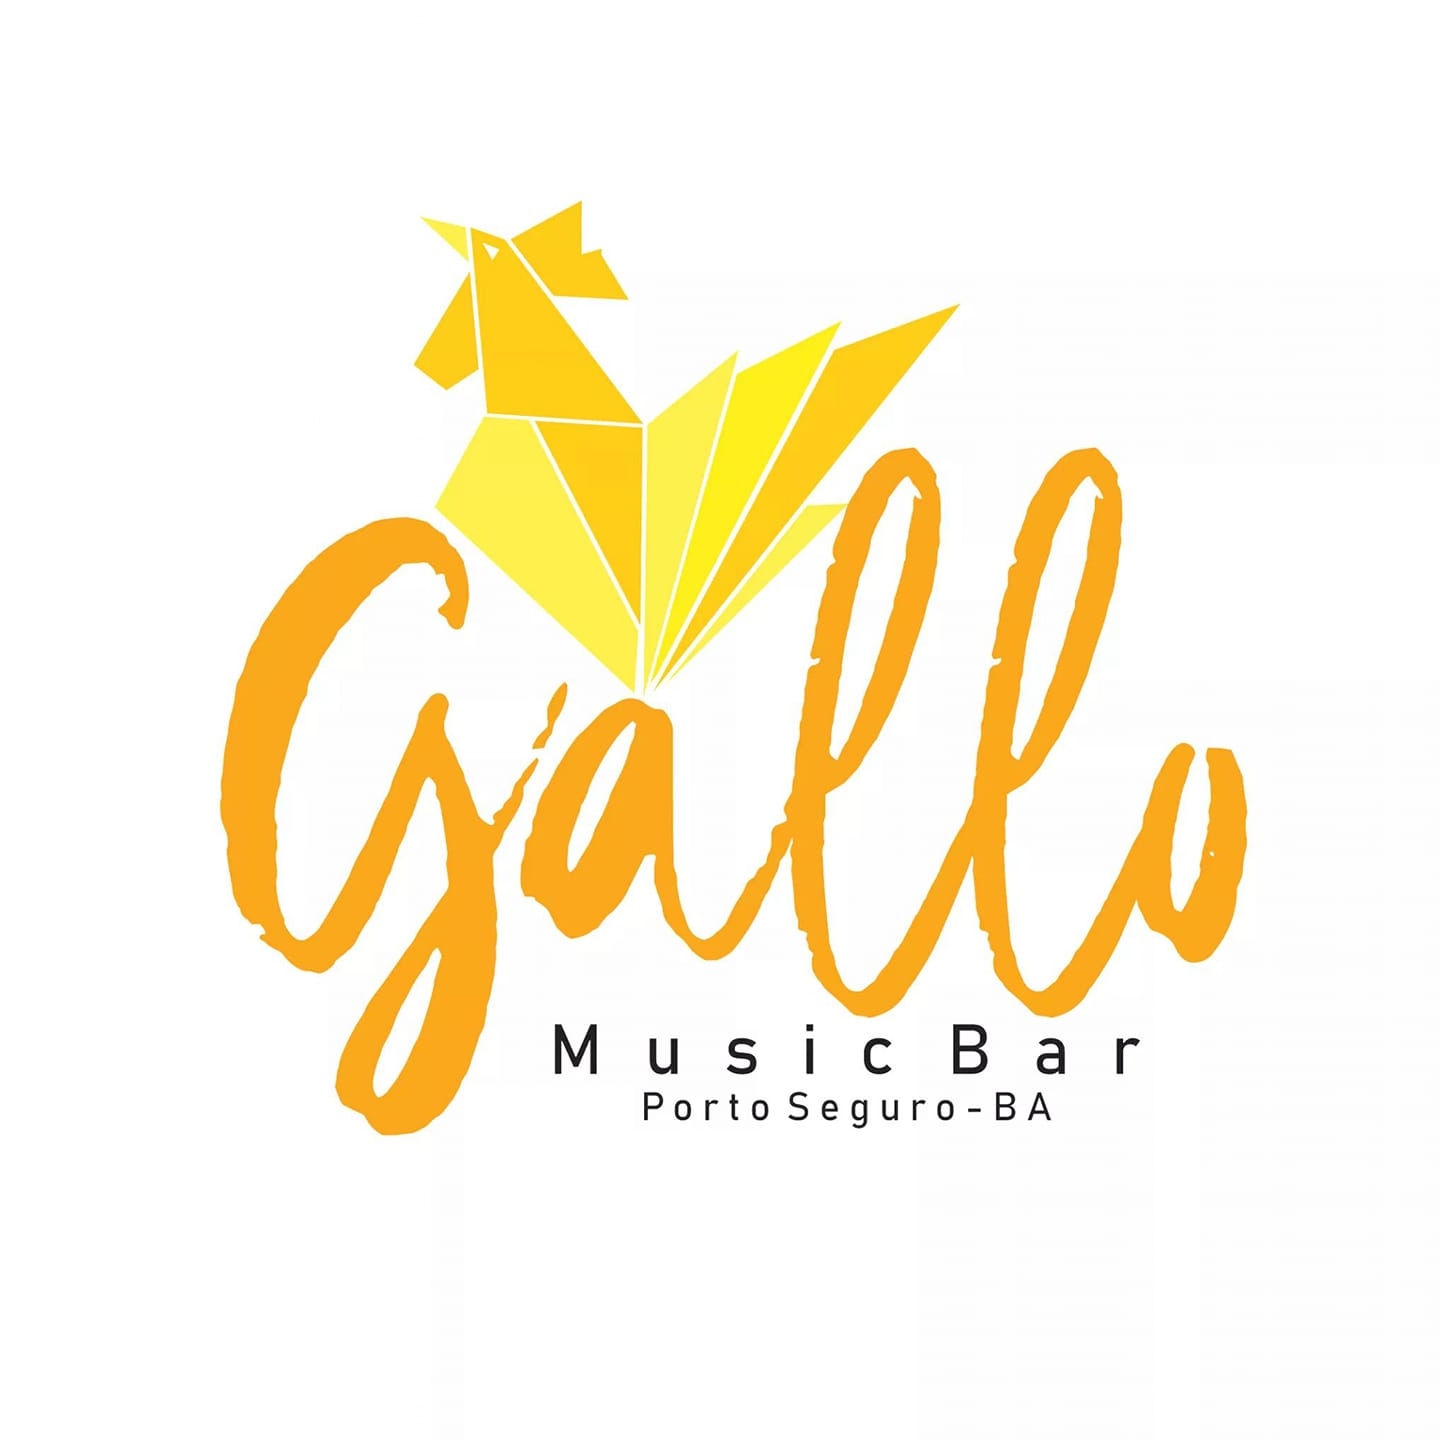 Cartaz  - Gallo Music Bar - Rua 2 de julho, 20B - Casa da Lenha, Sexta-feira 13 de Março de 2020